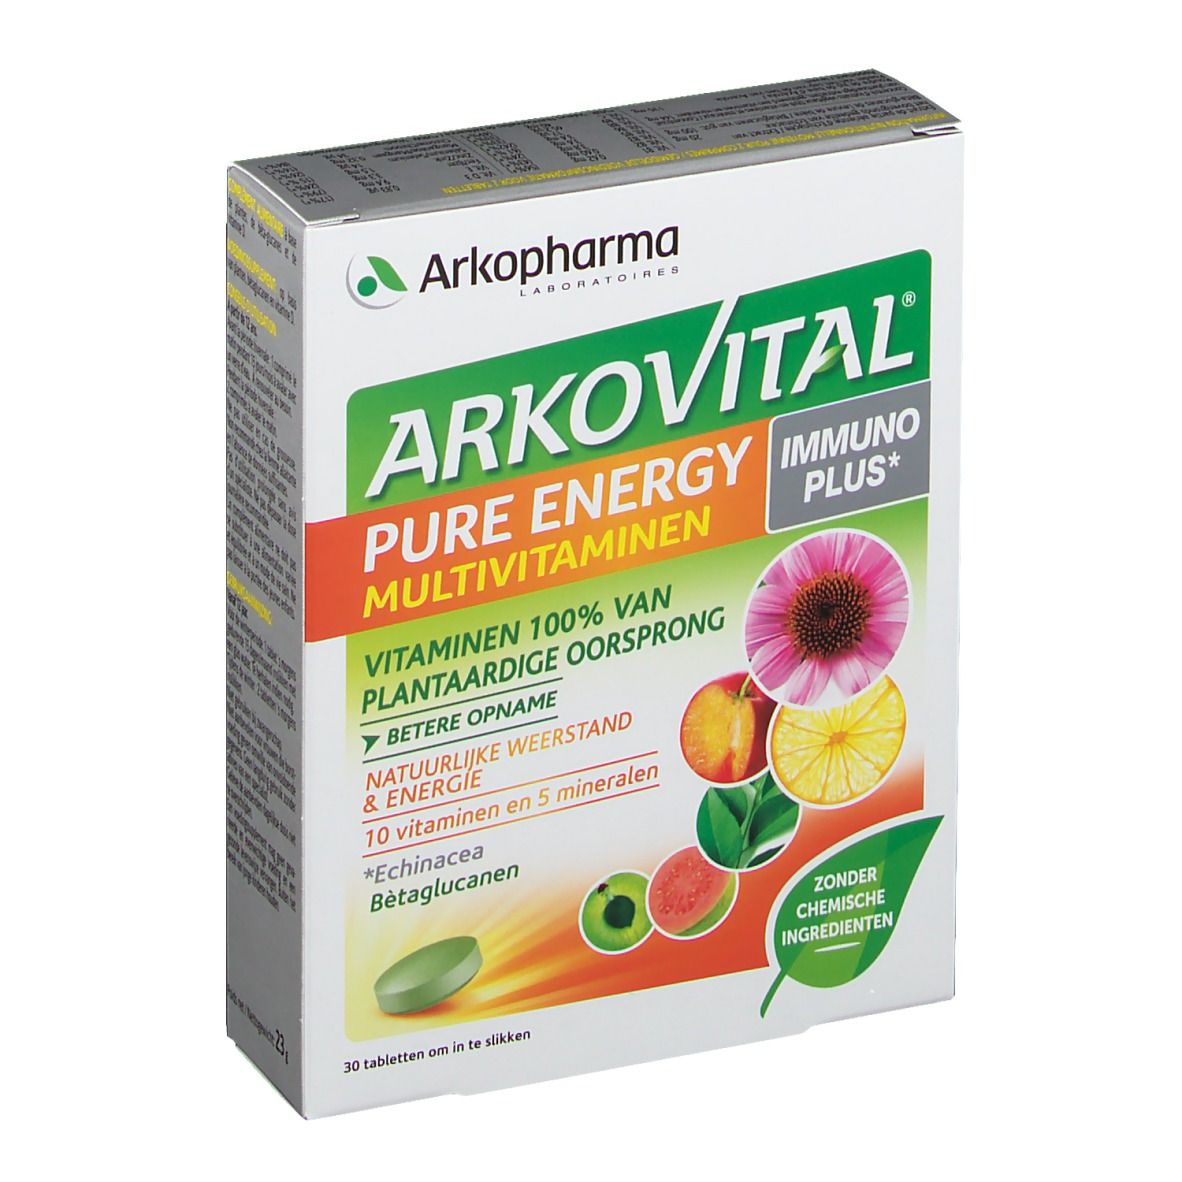 Arkovital Pure Energy Immunoplus